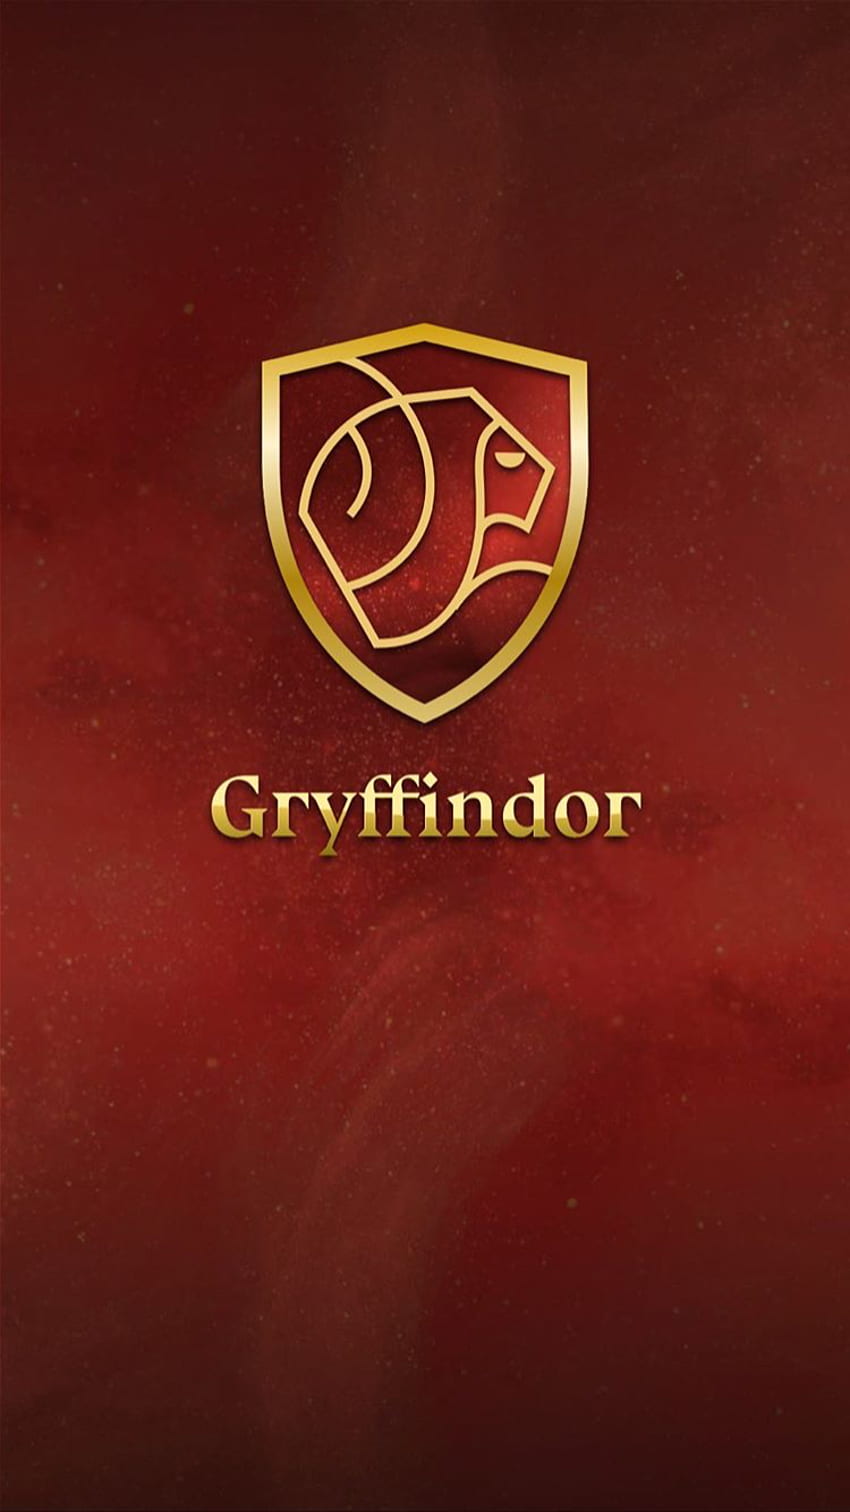 Hogwarts House Wallpaper  Gryffindor by TheLadyAvatar on DeviantArt